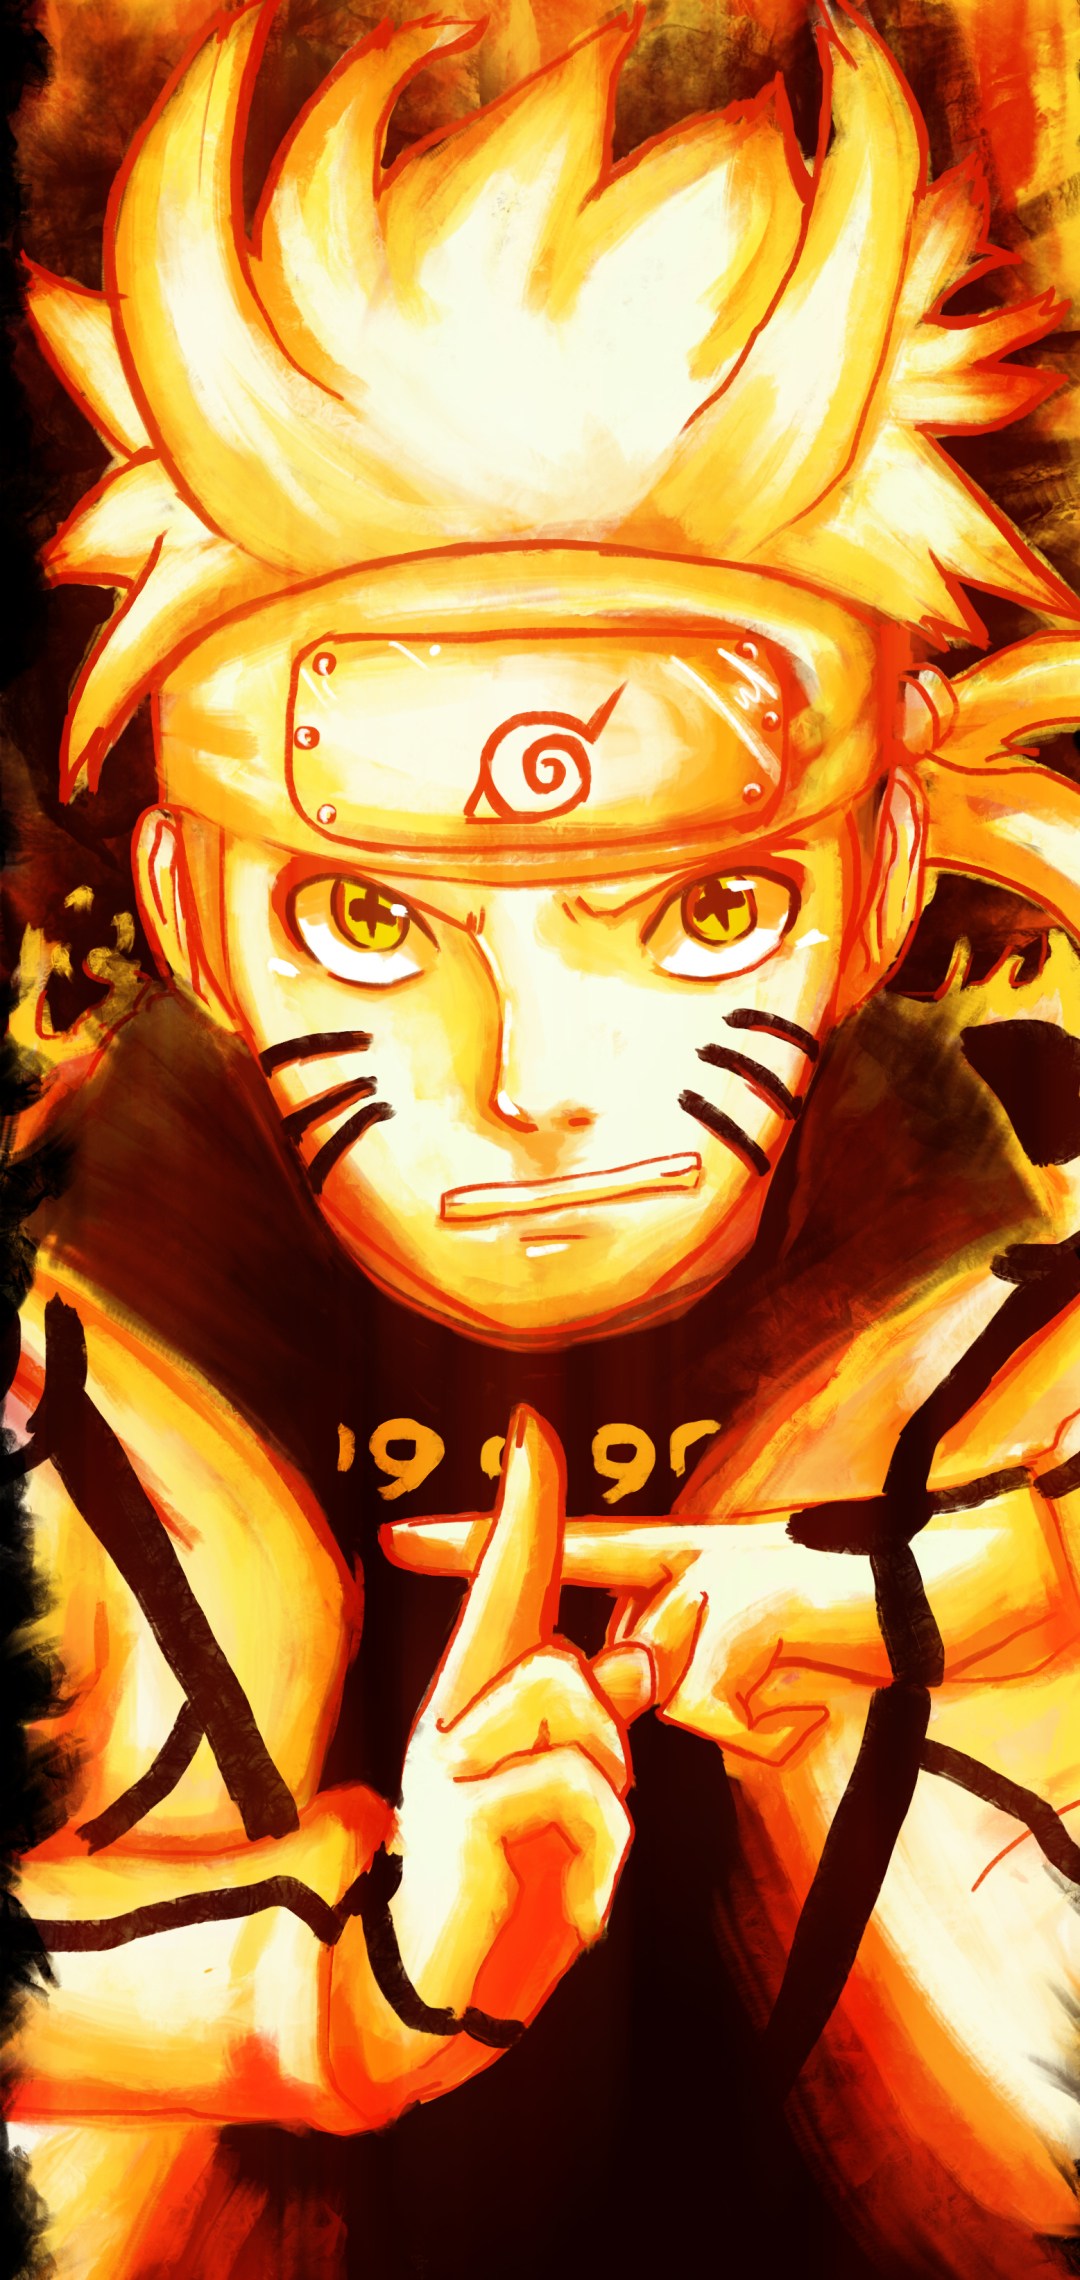 Hình Nền Naruto: Hãy khám phá tất cả các hình nền đặc sắc liên quan đến Naruto, chàng lính ninja quả cảm và tài năng. Hình ảnh đầy màu sắc và cuồng nhiệt sẽ giúp bạn thực sự tận hưởng thế giới của Naruto, và thêm niềm yêu thích của bạn cho anh chàng này!